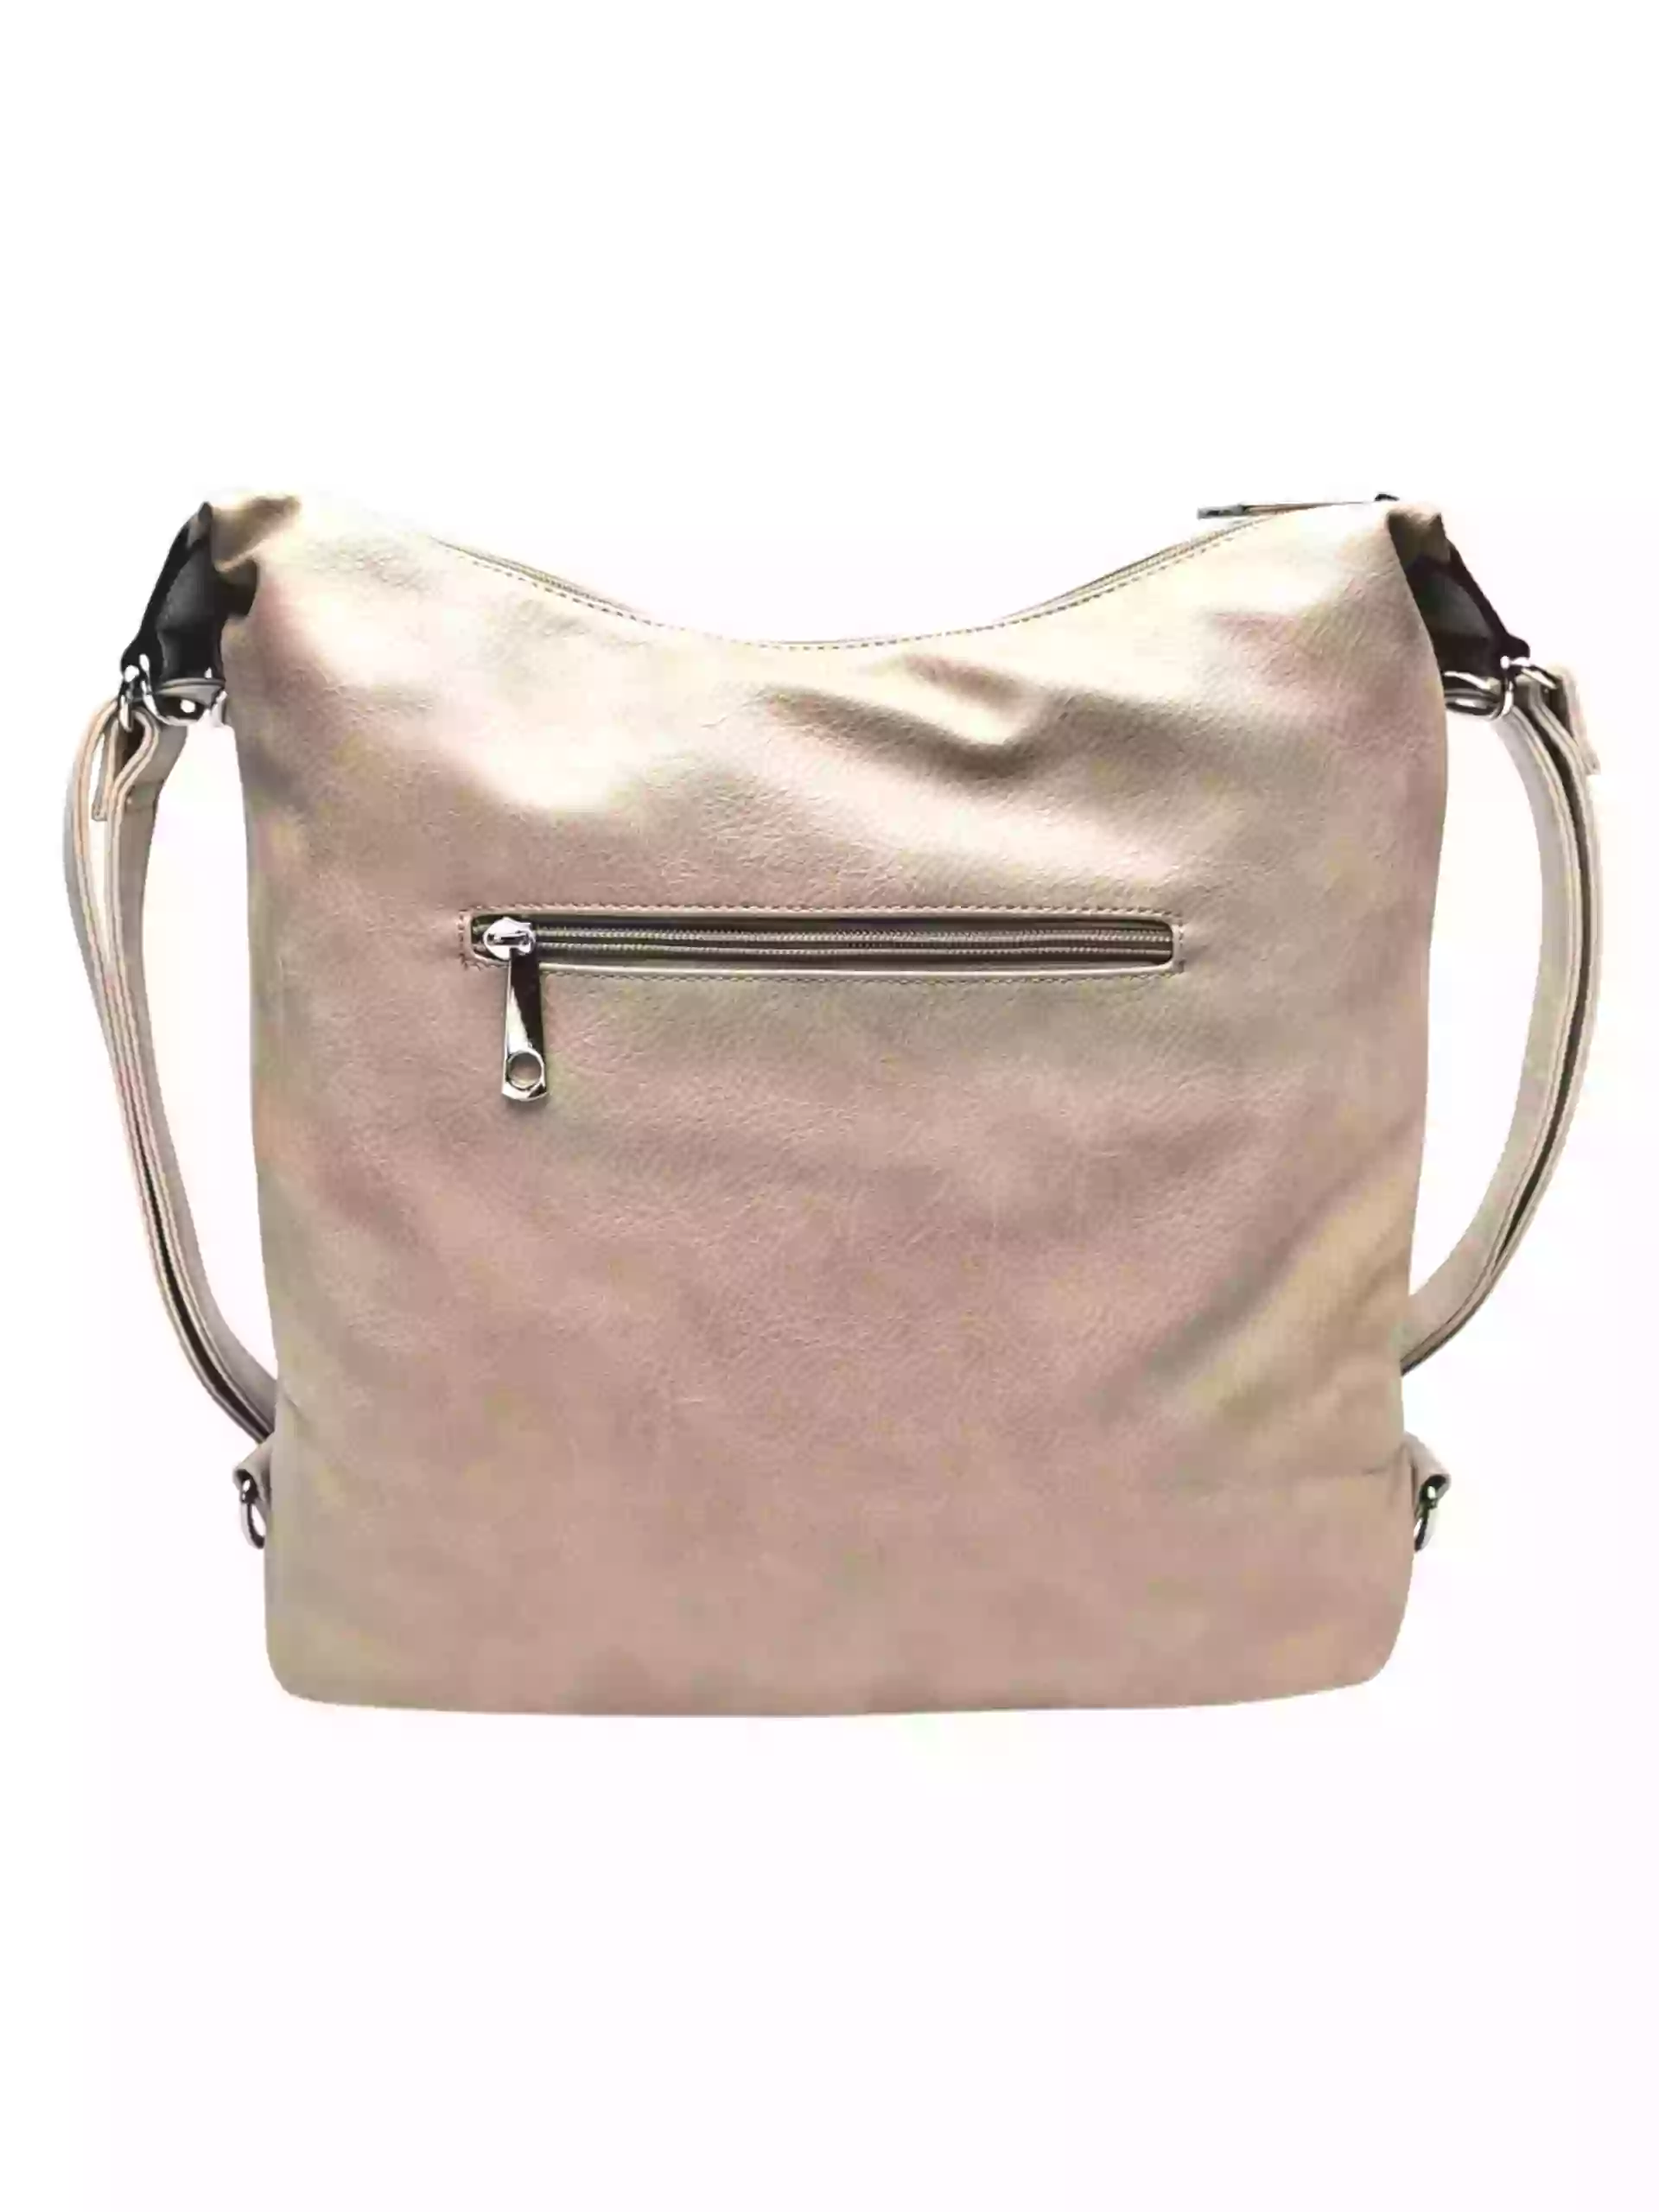 Velký světle hnědý kabelko-batoh z eko kůže, Tapple, H18076, zadní strana kabelko-batohu